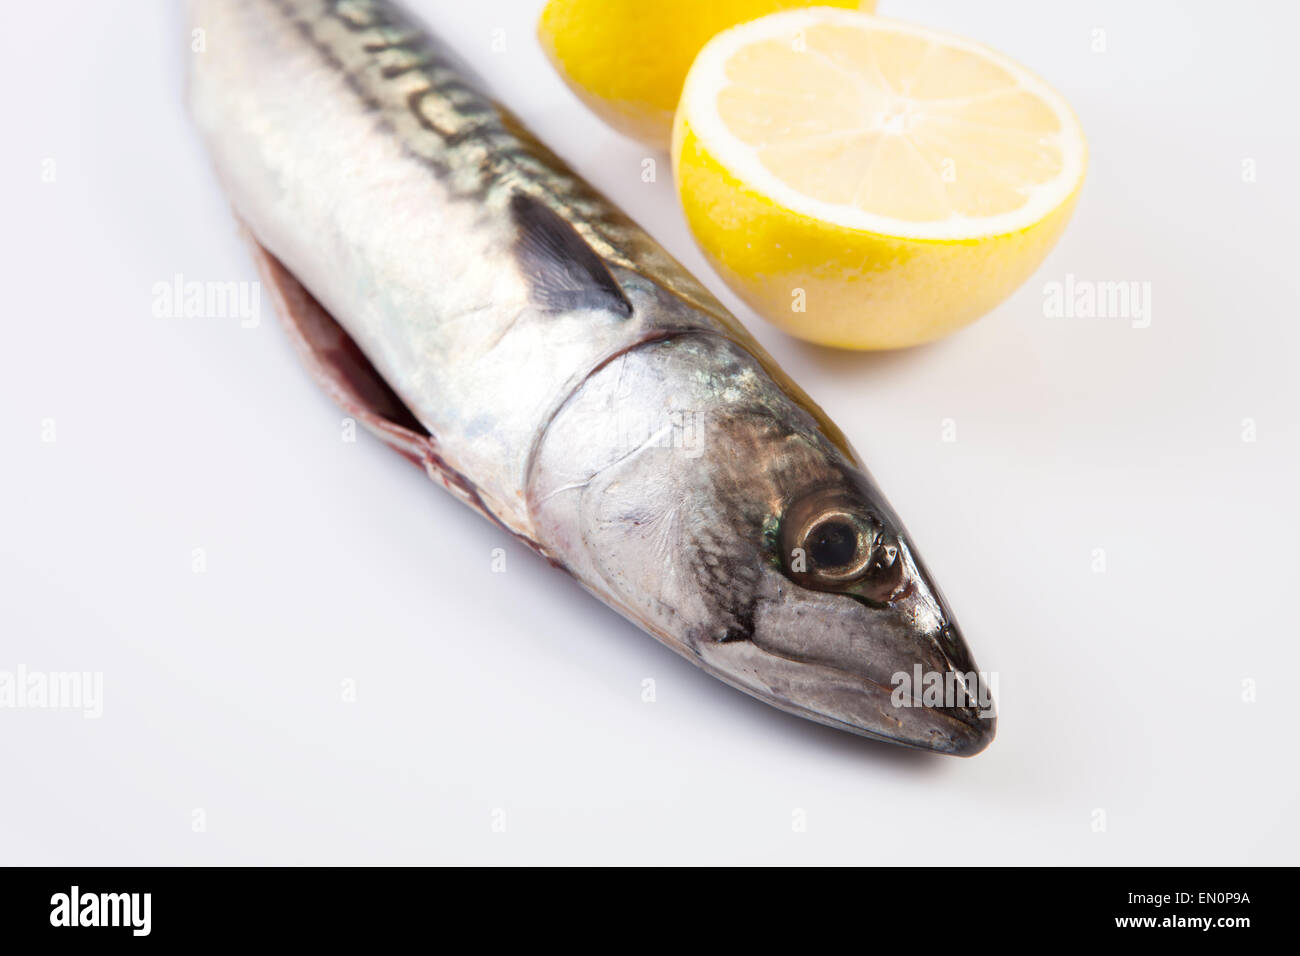 Frische rohe Makrele Fisch oder Stöcker Scrombrus. Isoliert auf weißem Hintergrund Stockfoto